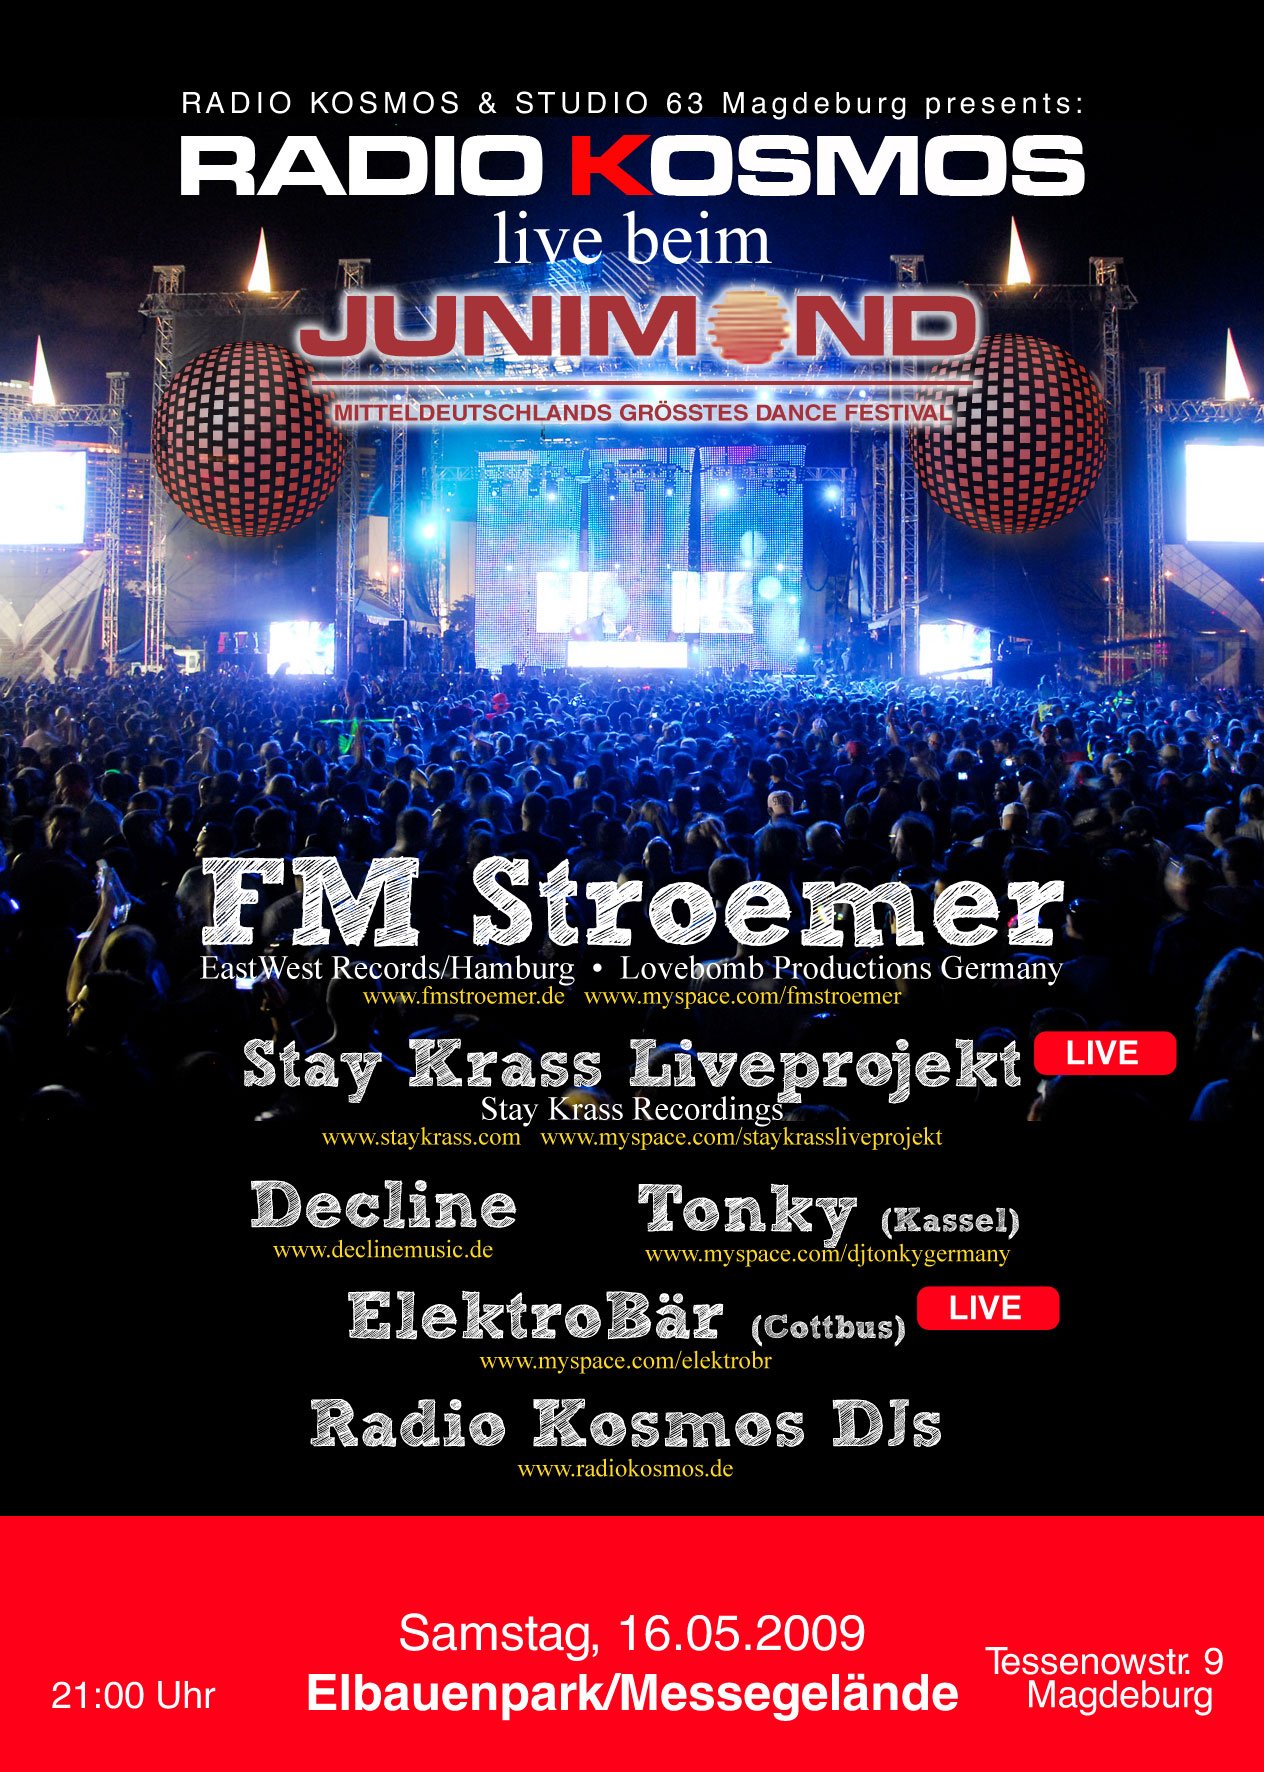 RADIO KOSMOS live beim JUNIMOND 2009 im Elbauenpark Messehallen (Magdeburg)  am 16. Mai. 2009 | Last.fm